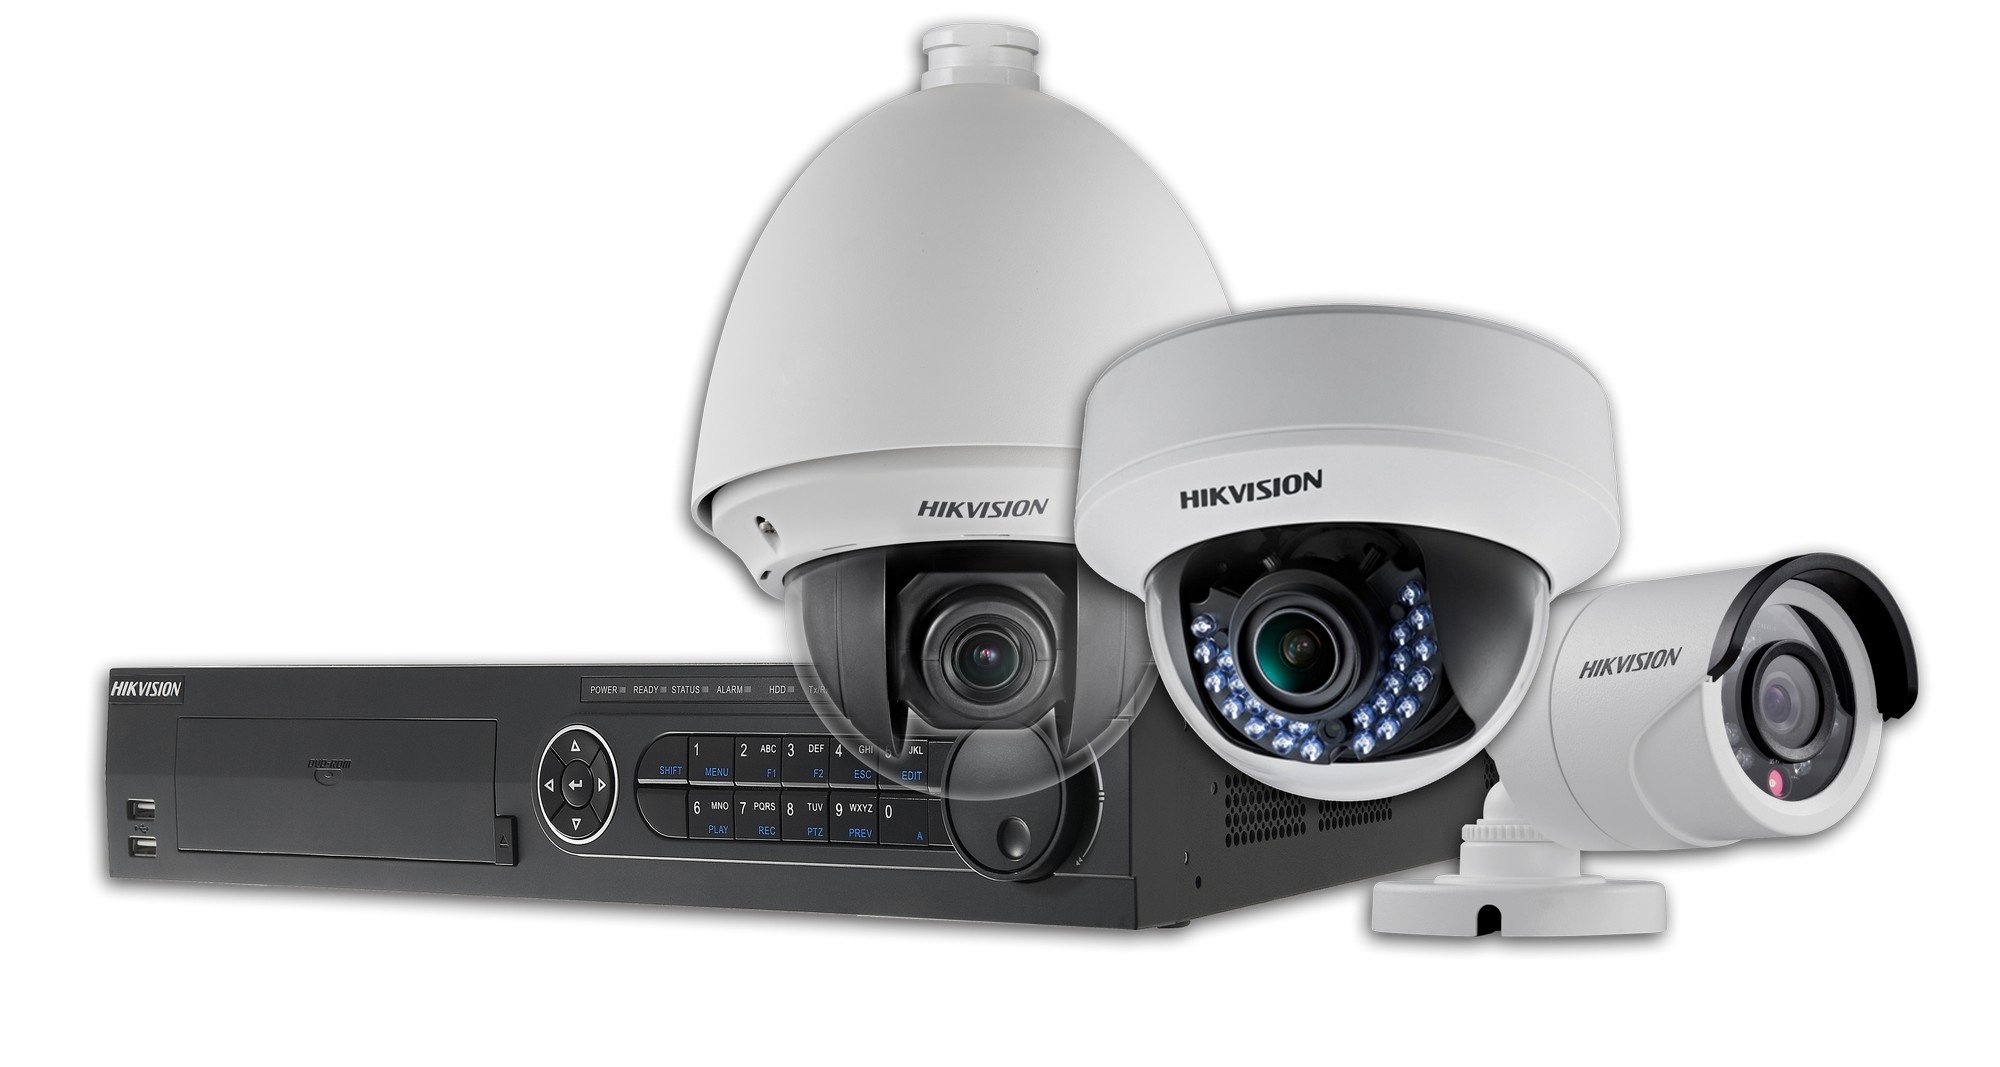 HIkvision Houston Installation Support Repair Equipment Security Cameras